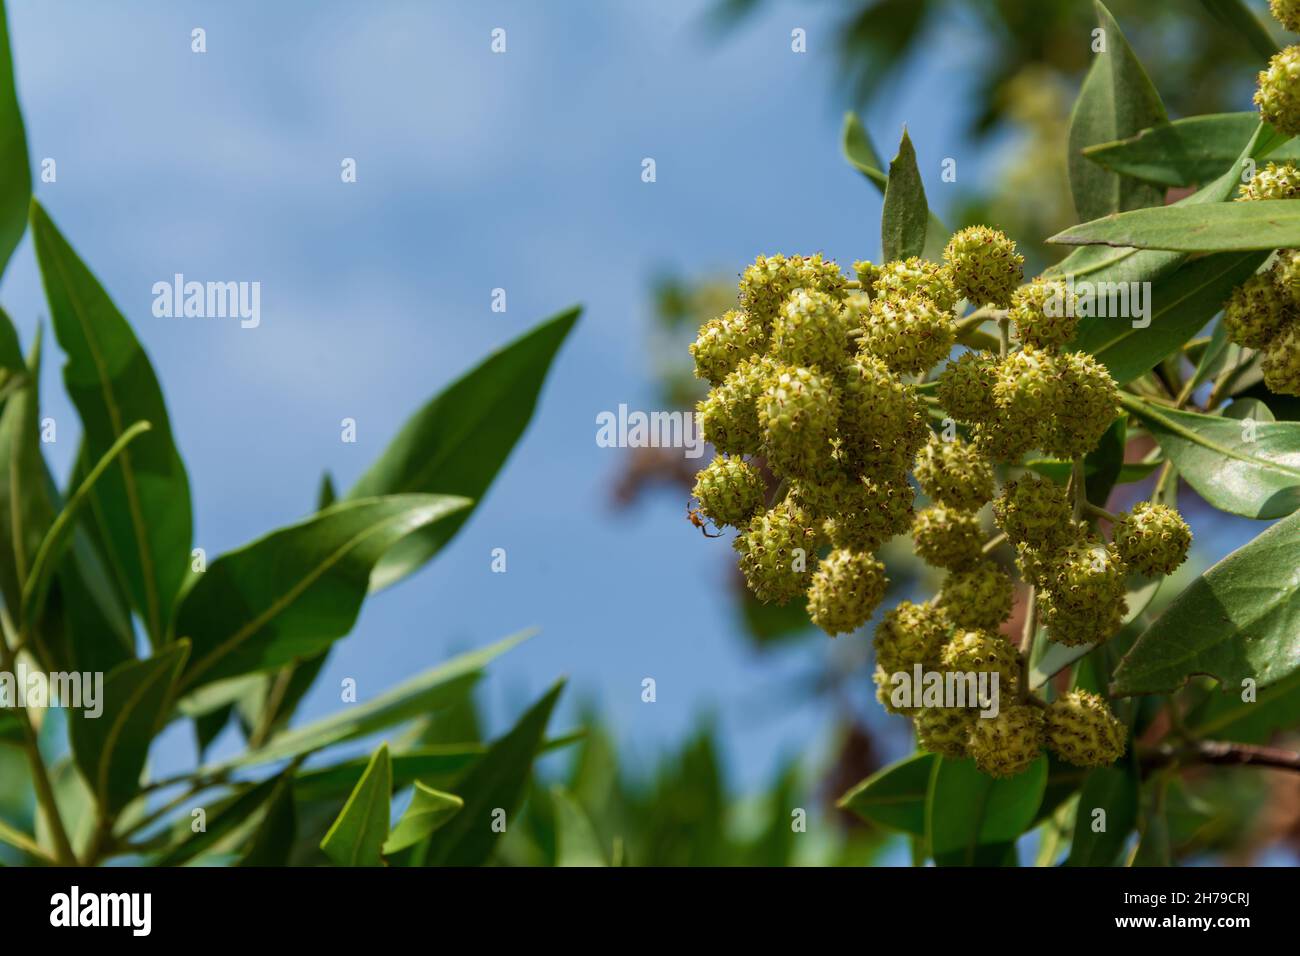 Schnell wachsender Button Mangrove oder Conocarpus erectus Baum mit vielen frischen und gesunden grünen Blättern und Samen Stockfoto